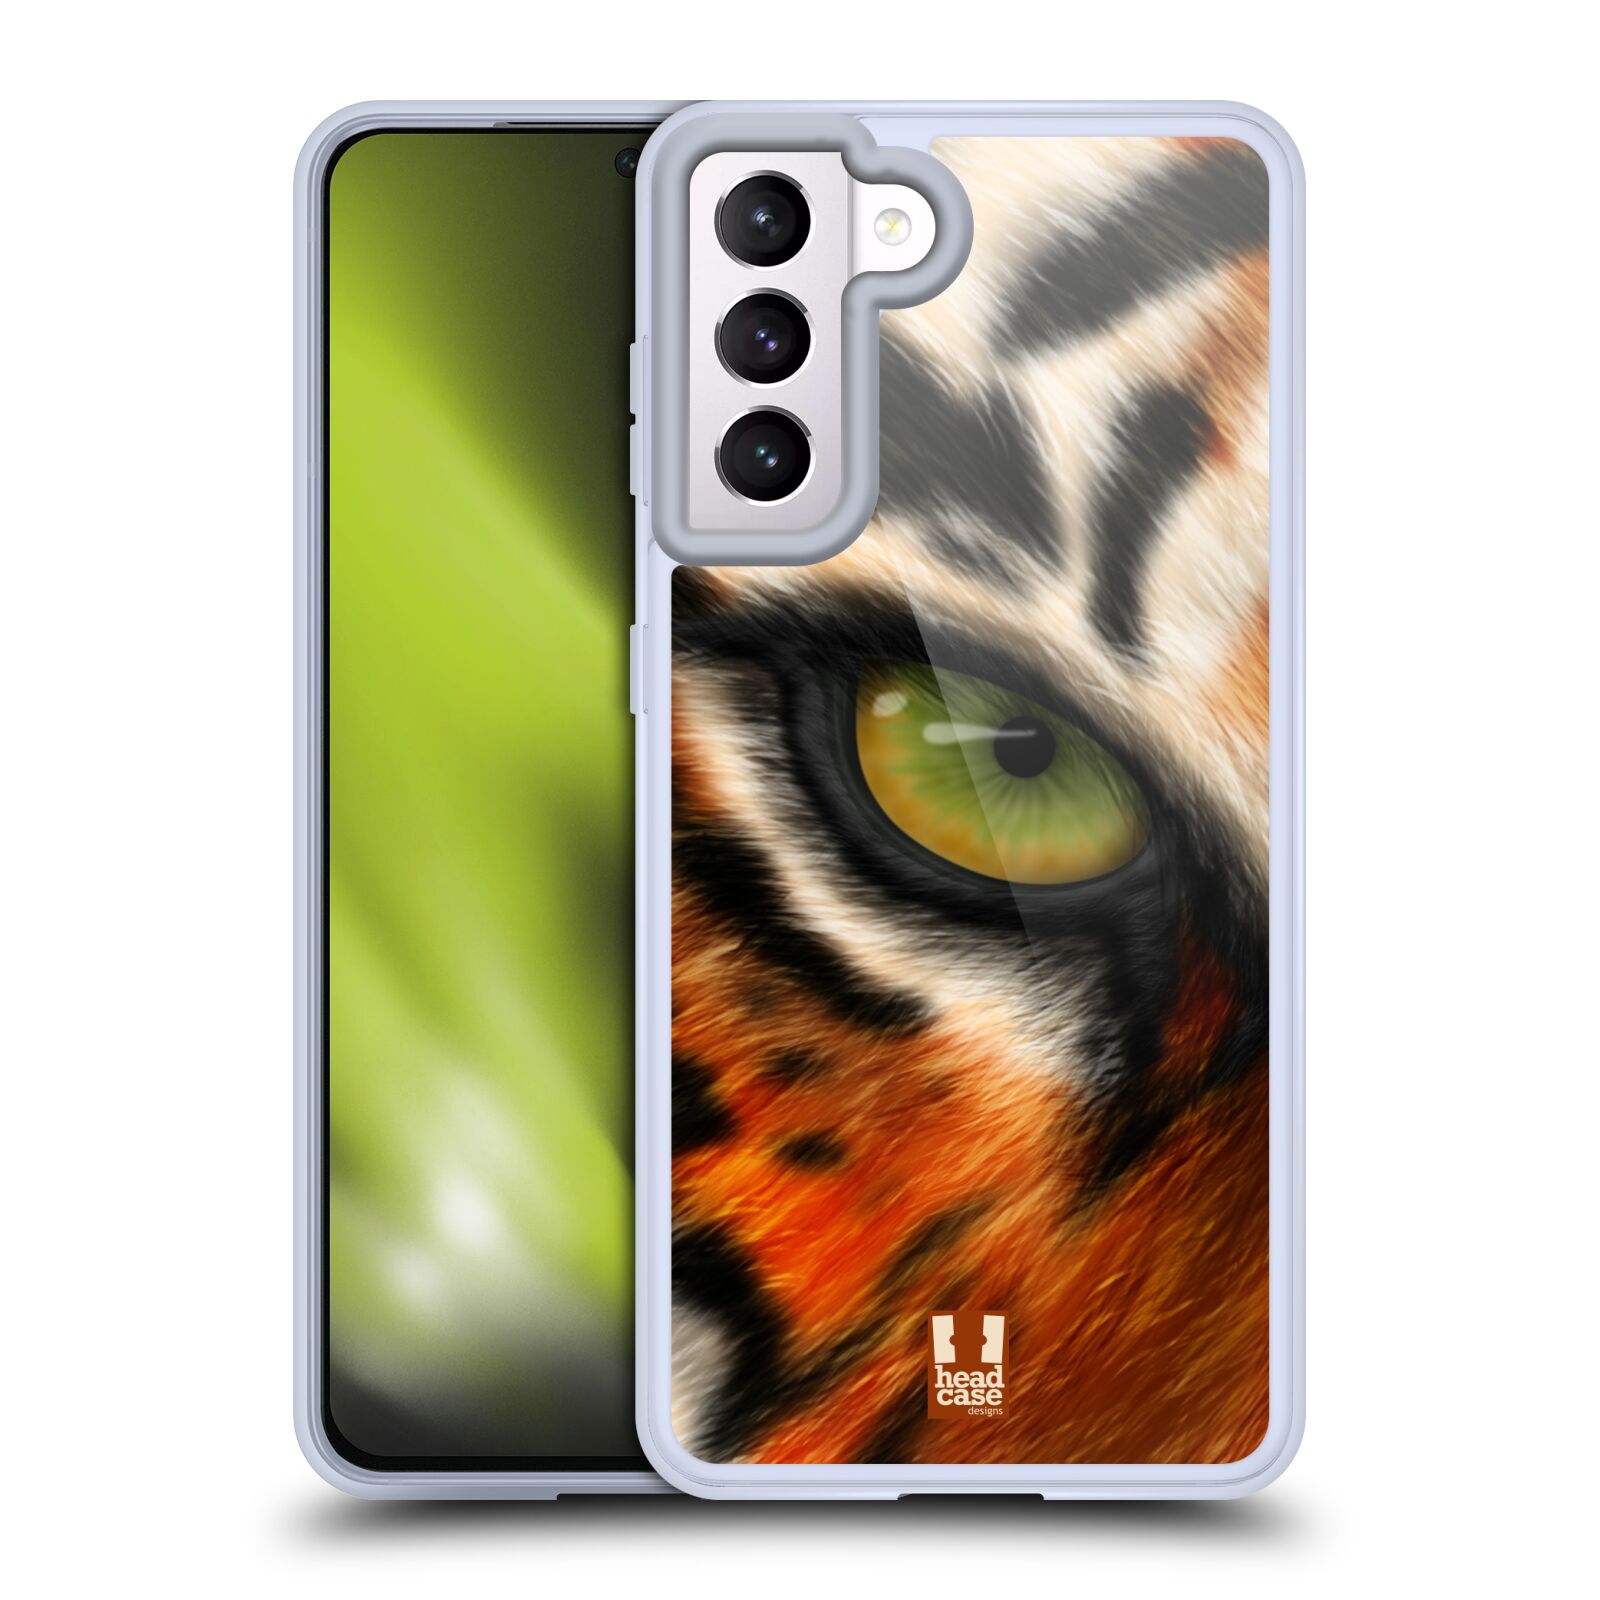 Plastový obal HEAD CASE na mobil Samsung Galaxy S21 5G vzor pohled zvířete oko tygr